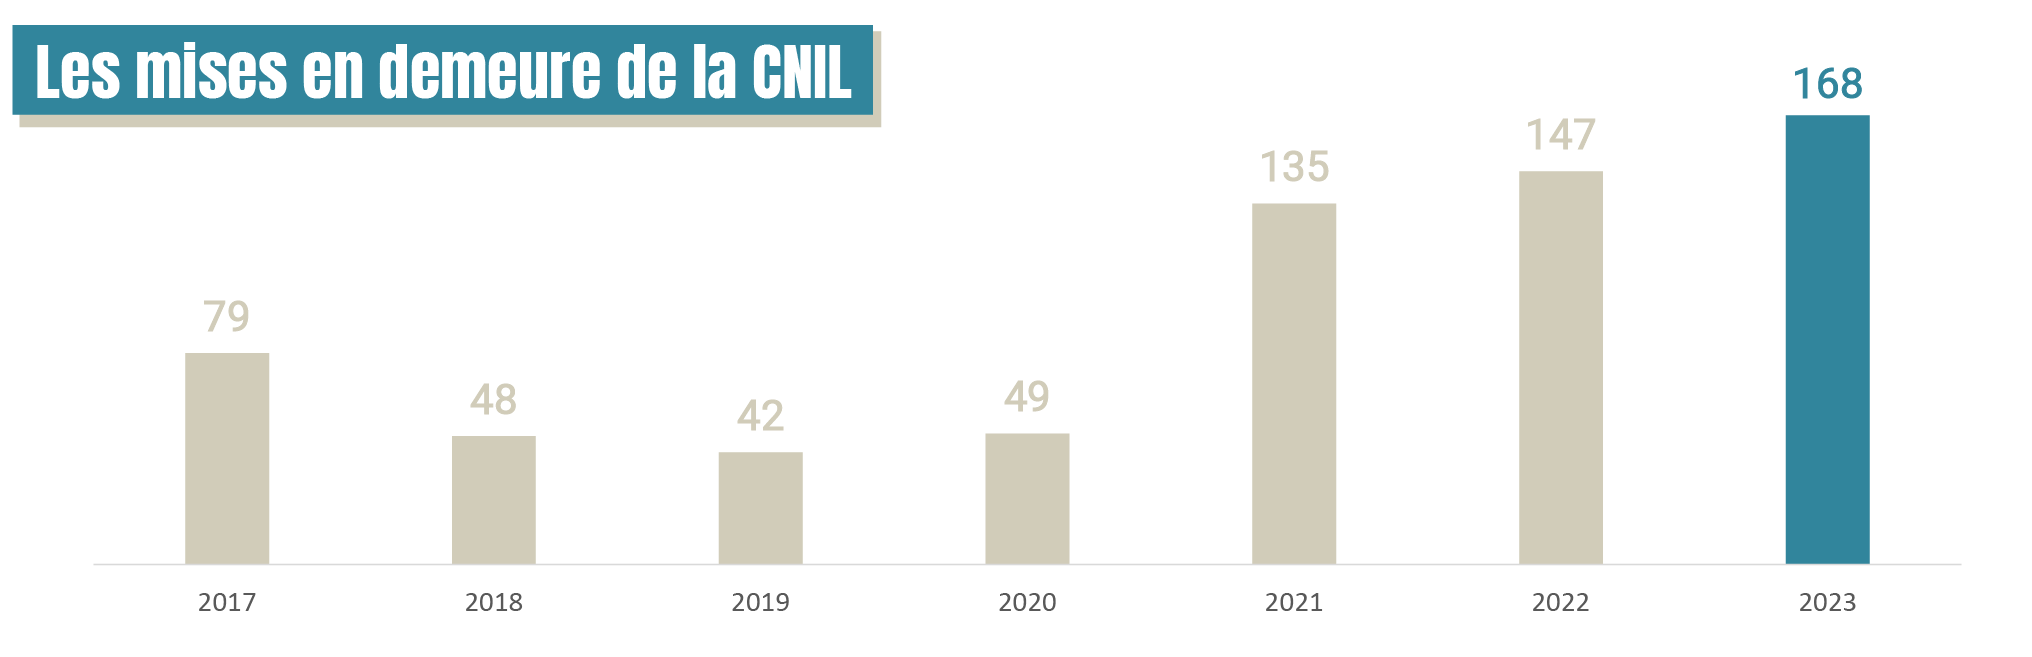 Infographie - Les mises en demeure de la CNIL par année